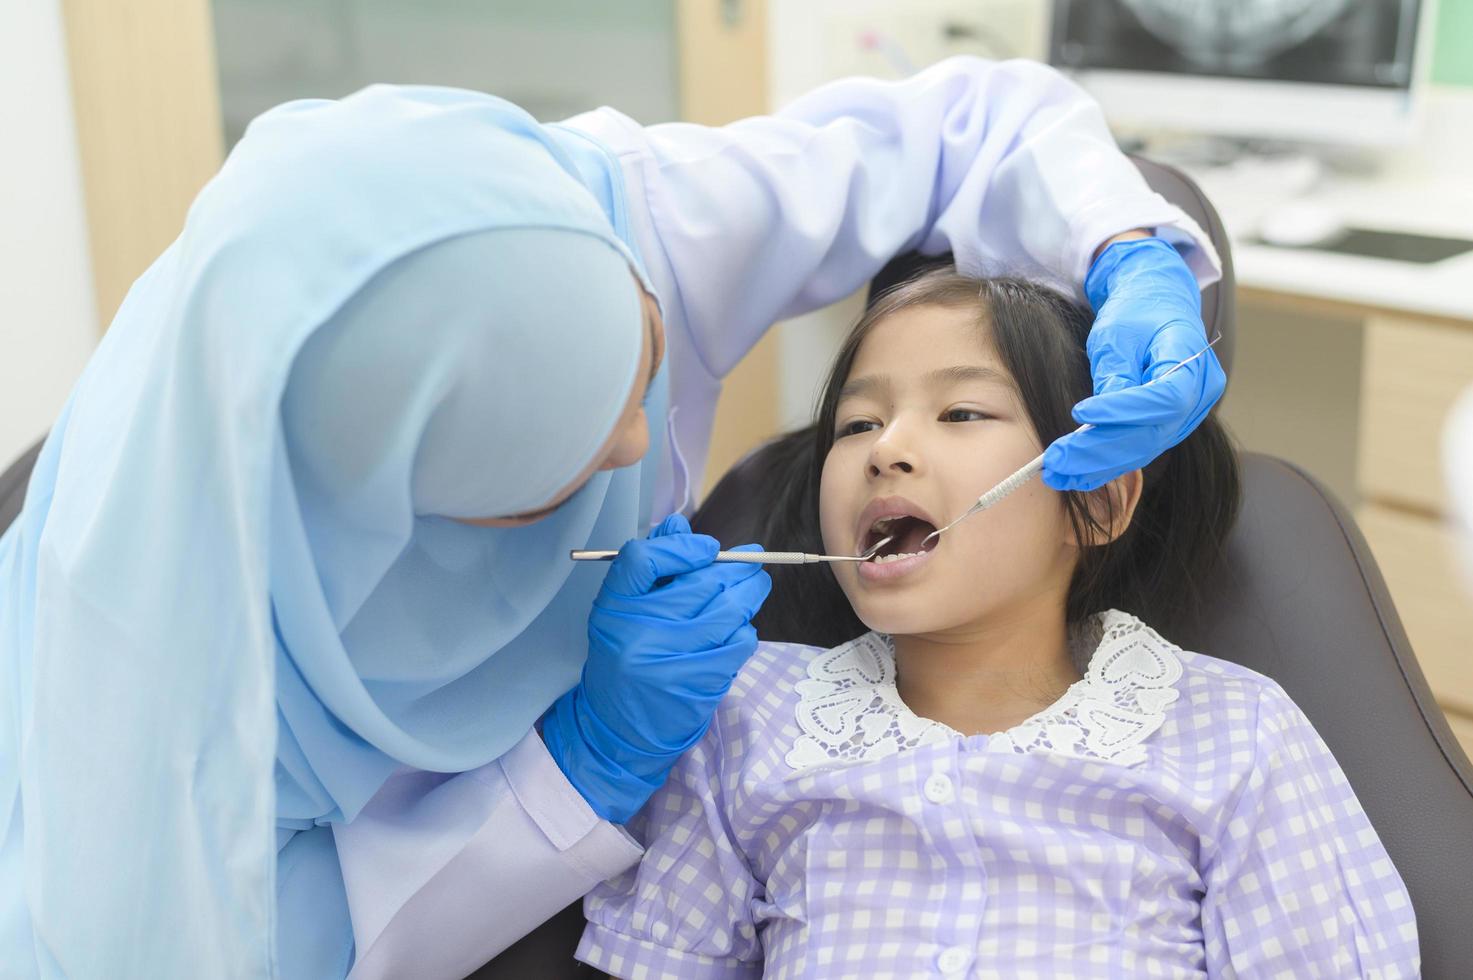 en liten söt flicka som har tänder undersökta av muslimsk tandläkare på tandklinik, tandkontroll och friska tänder koncept foto